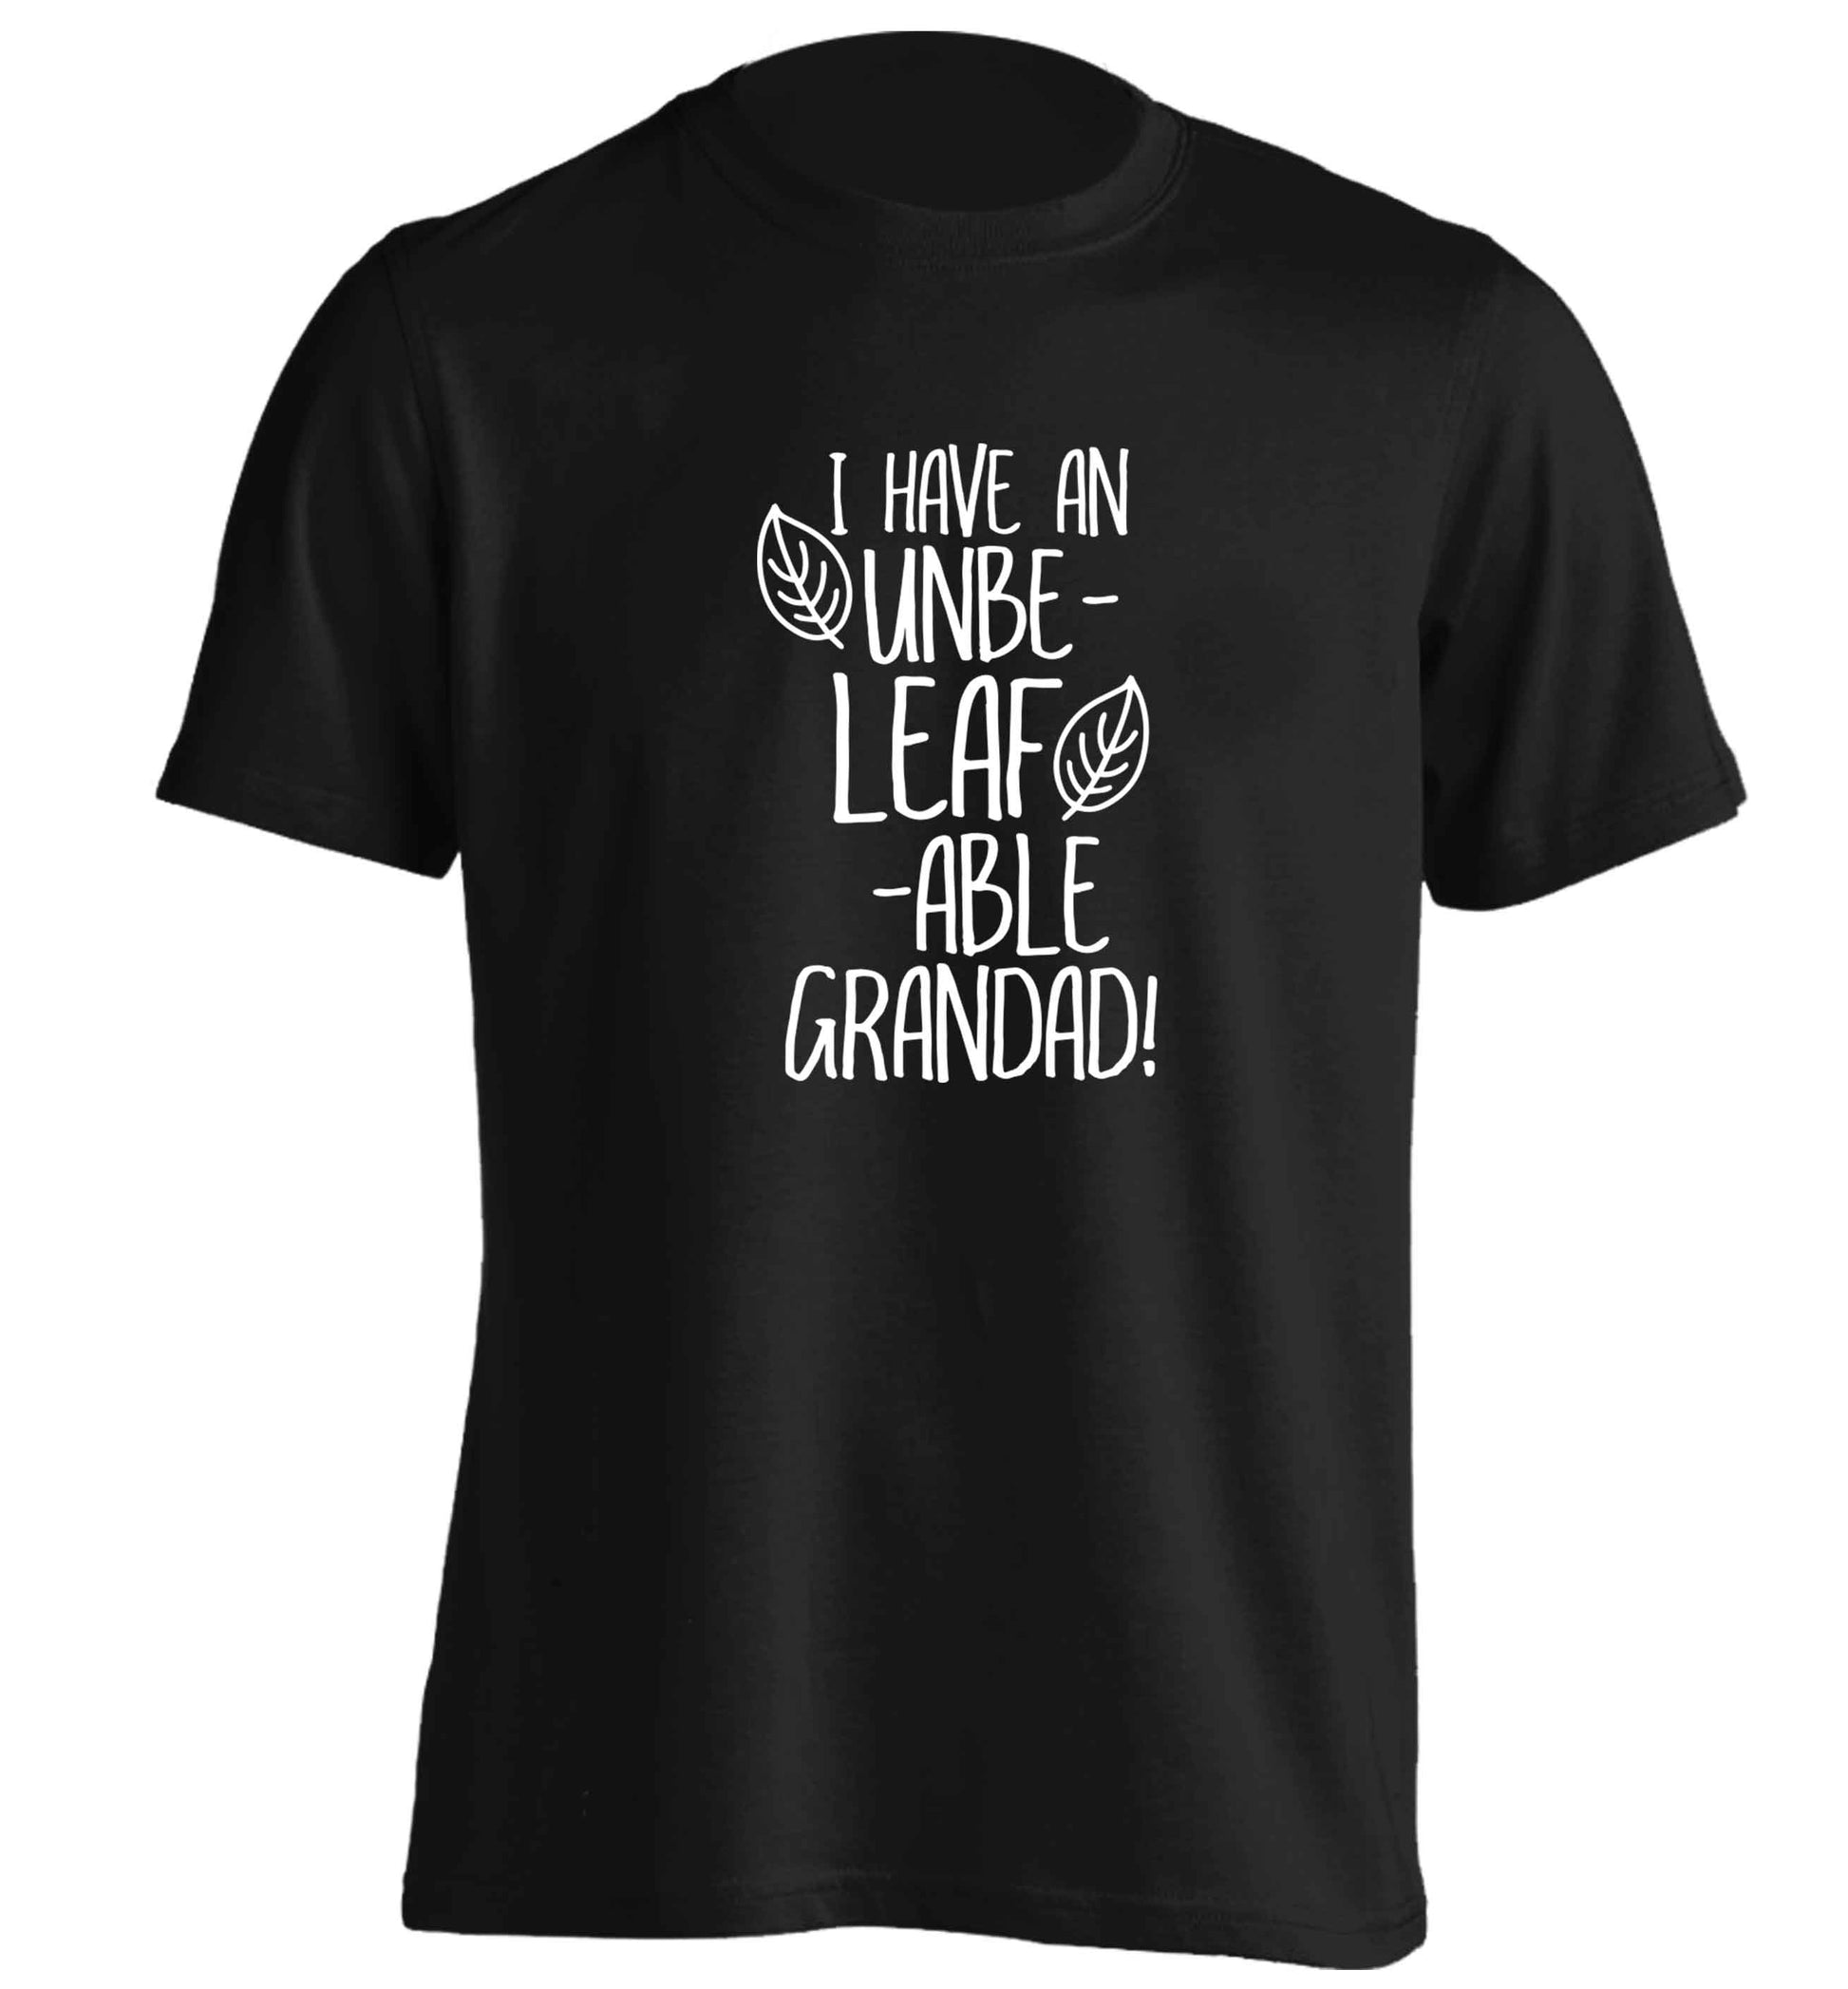 I have an unbe-leaf-able grandad adults unisex black Tshirt 2XL